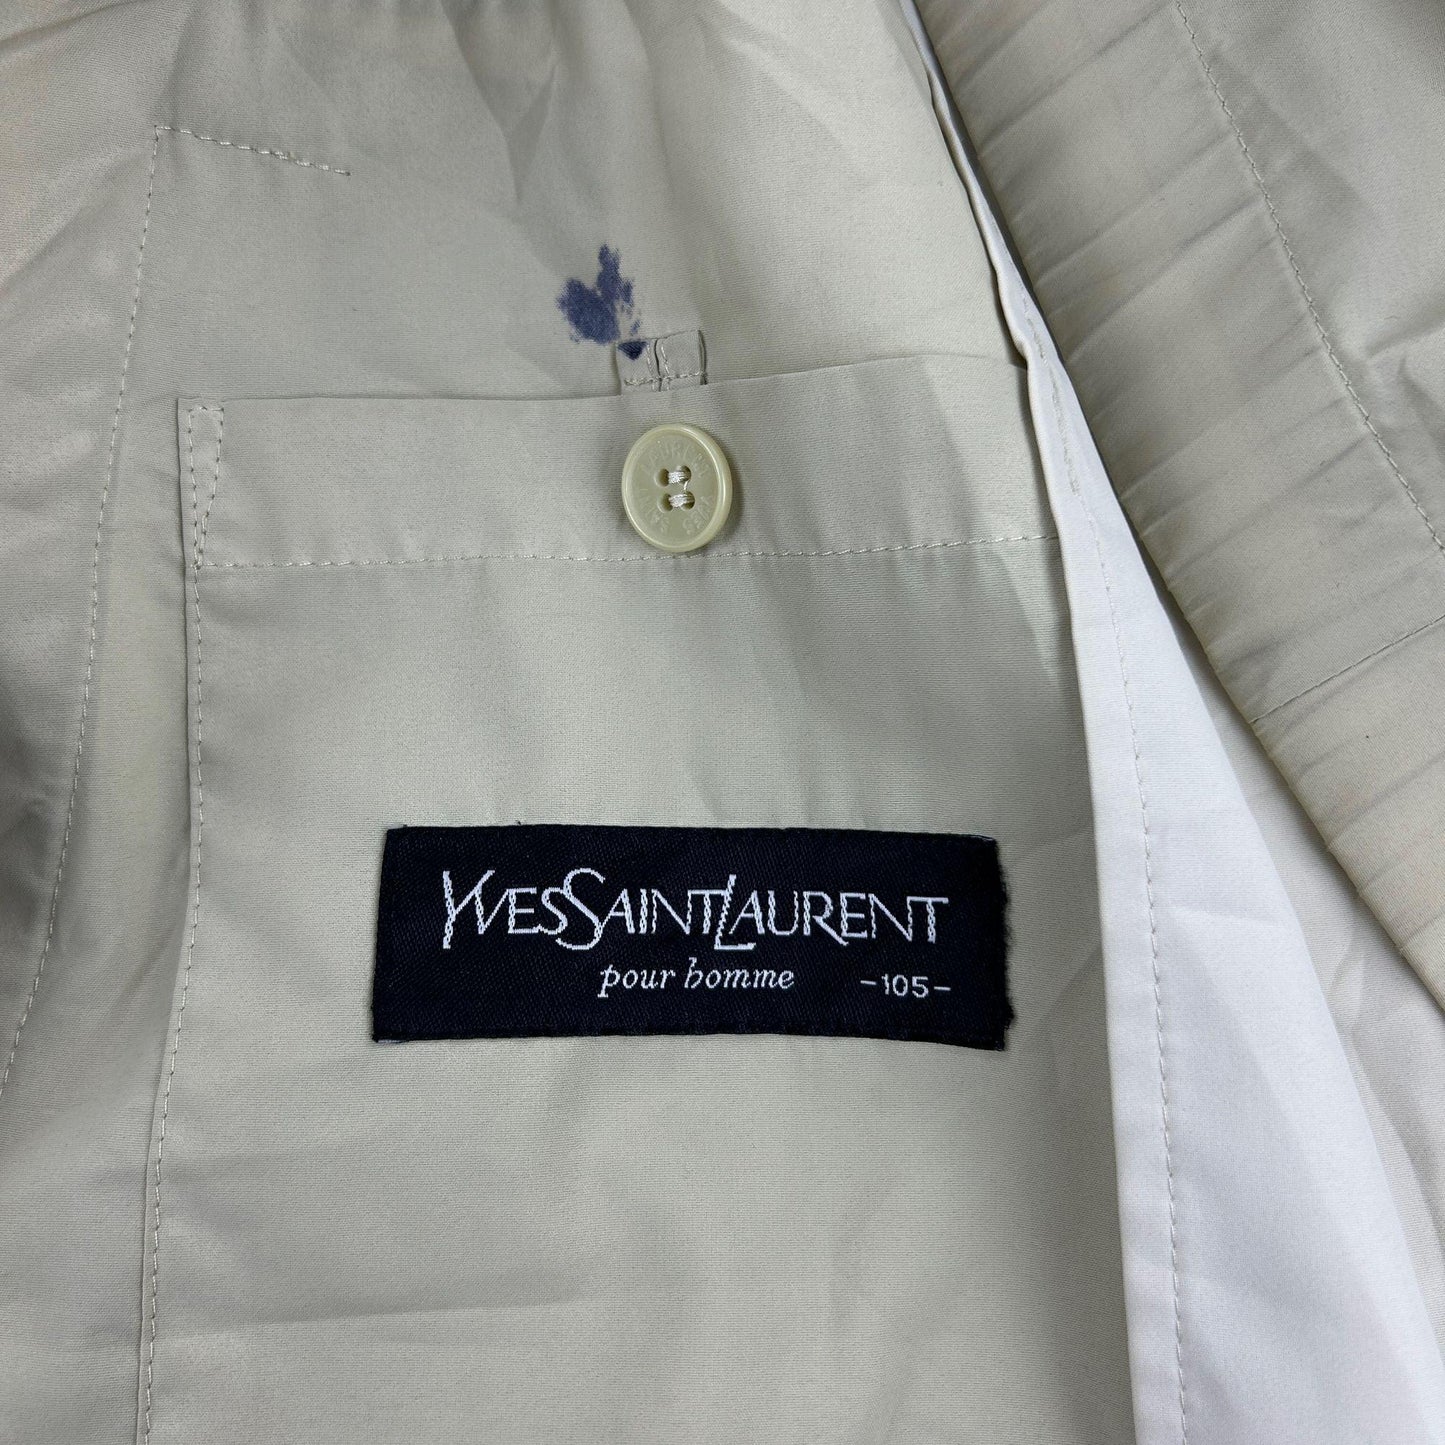 Vintage Yves Saint Laurent Harrington Jacket Size 105 - Known Source